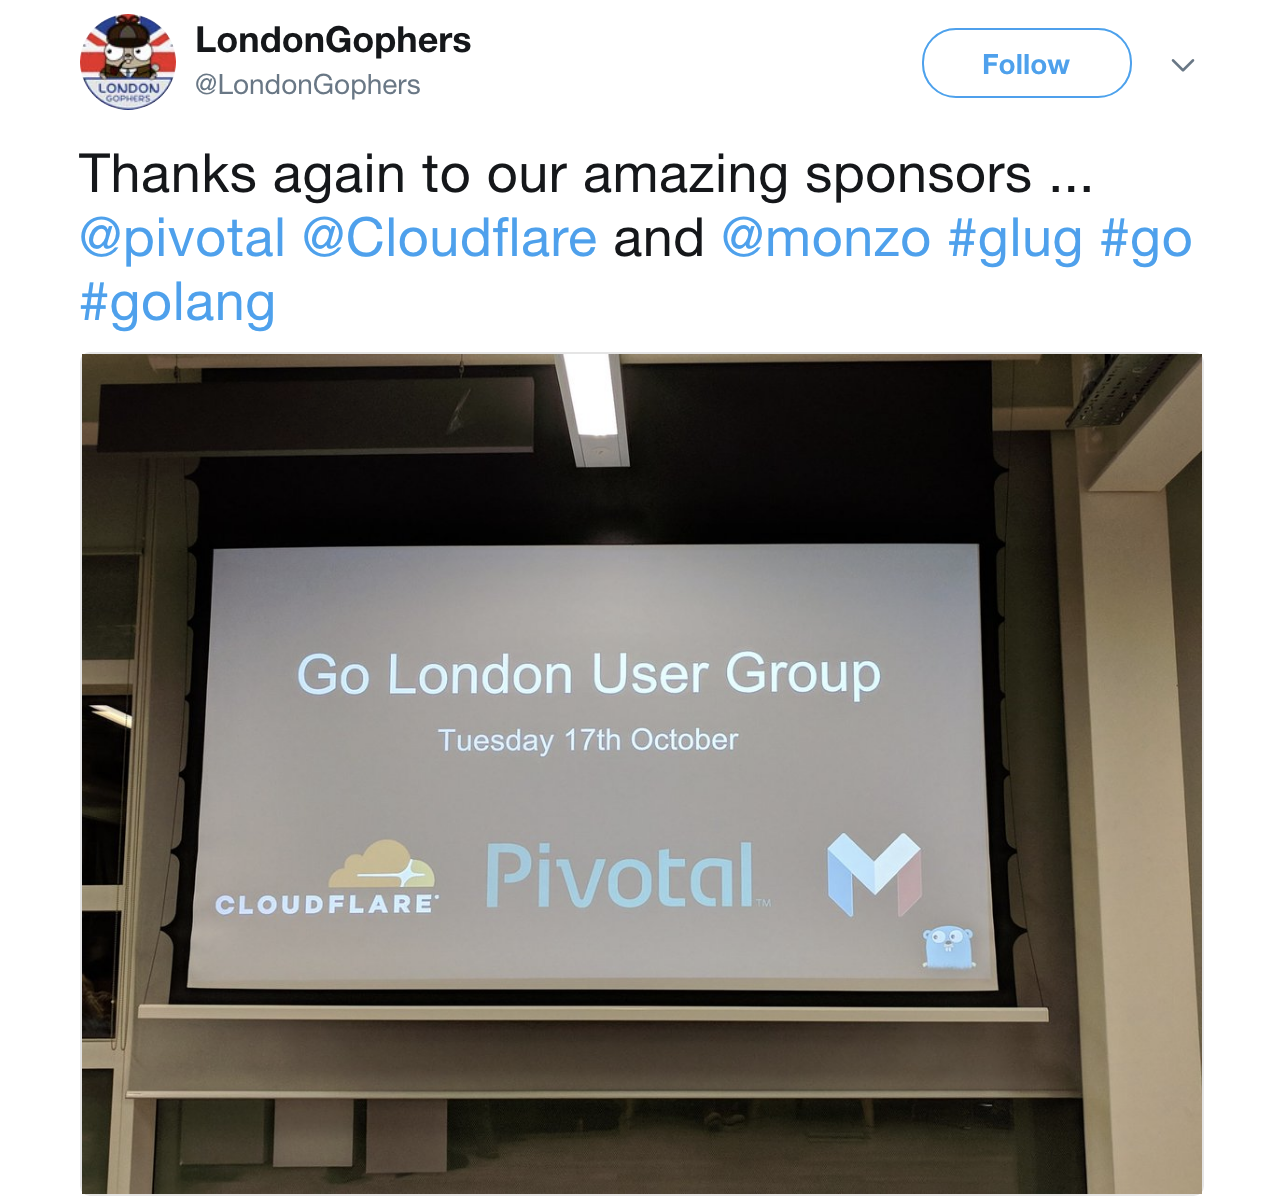 Go London User Group (GLUG)